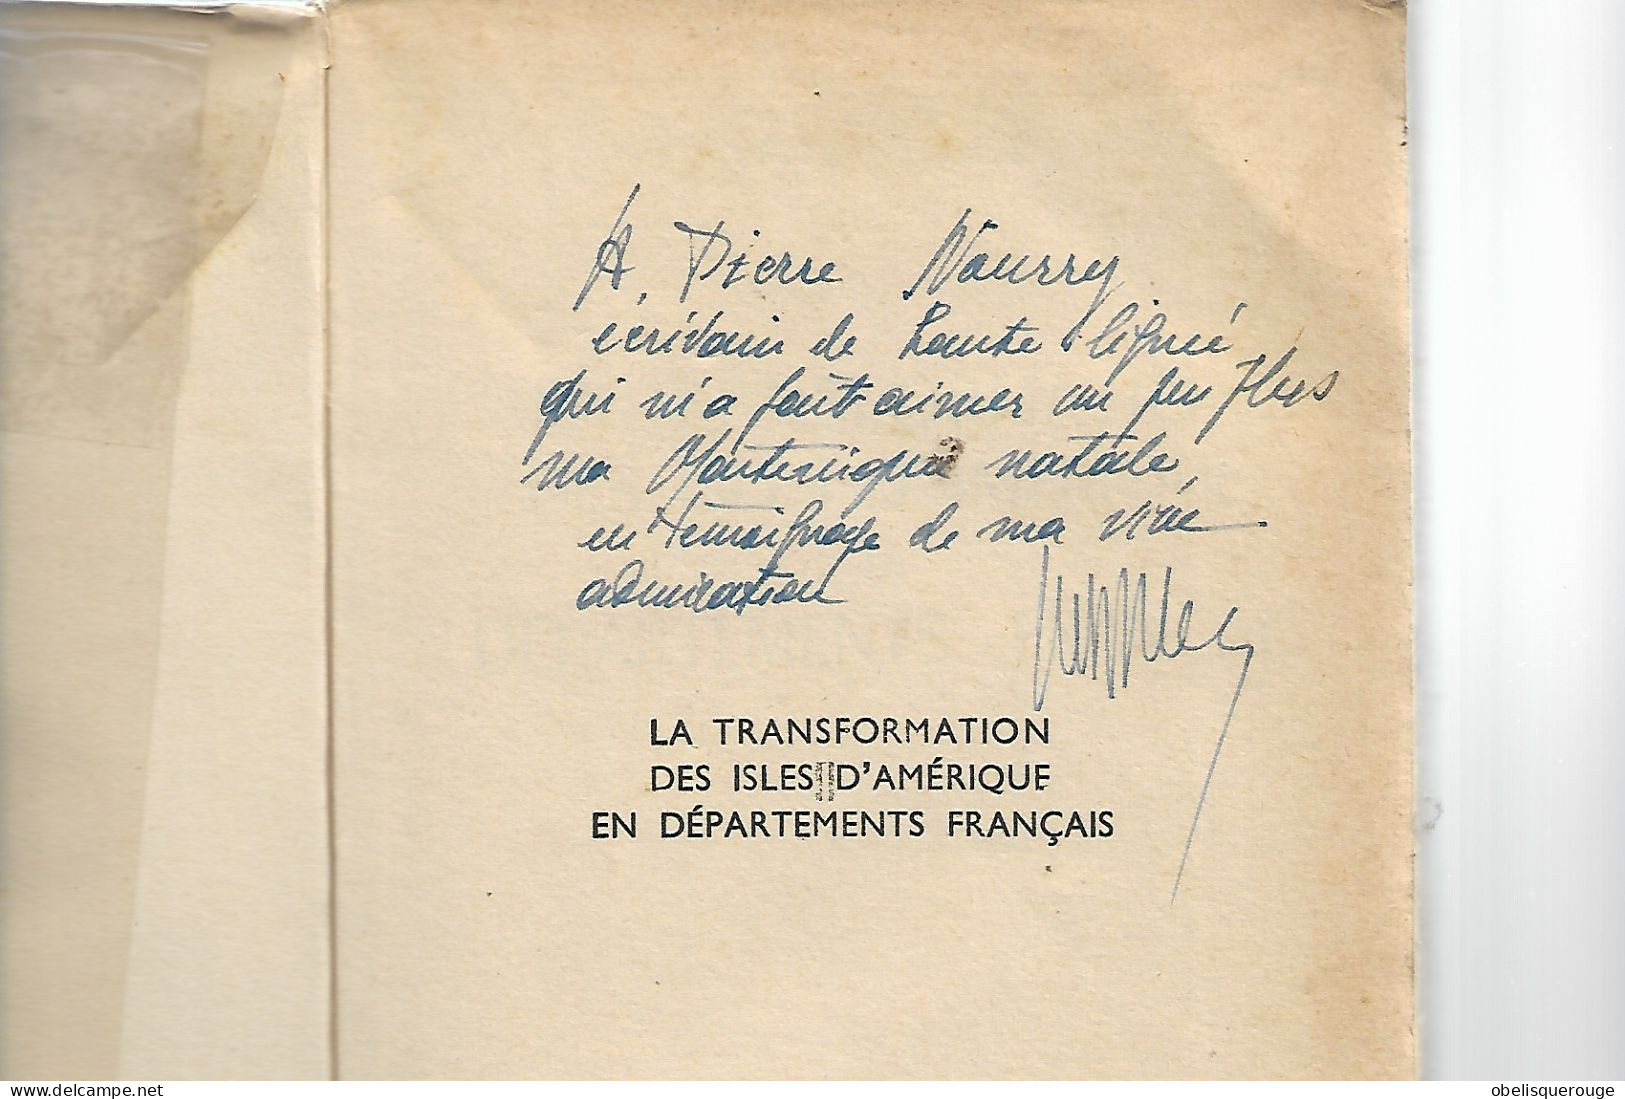 LIVRE Martinique VICTOR SABLE TRANSFORMATION DES ILES EN DEPARTEMENT FRANCAIS DEDICACE 1955 - Livres Dédicacés